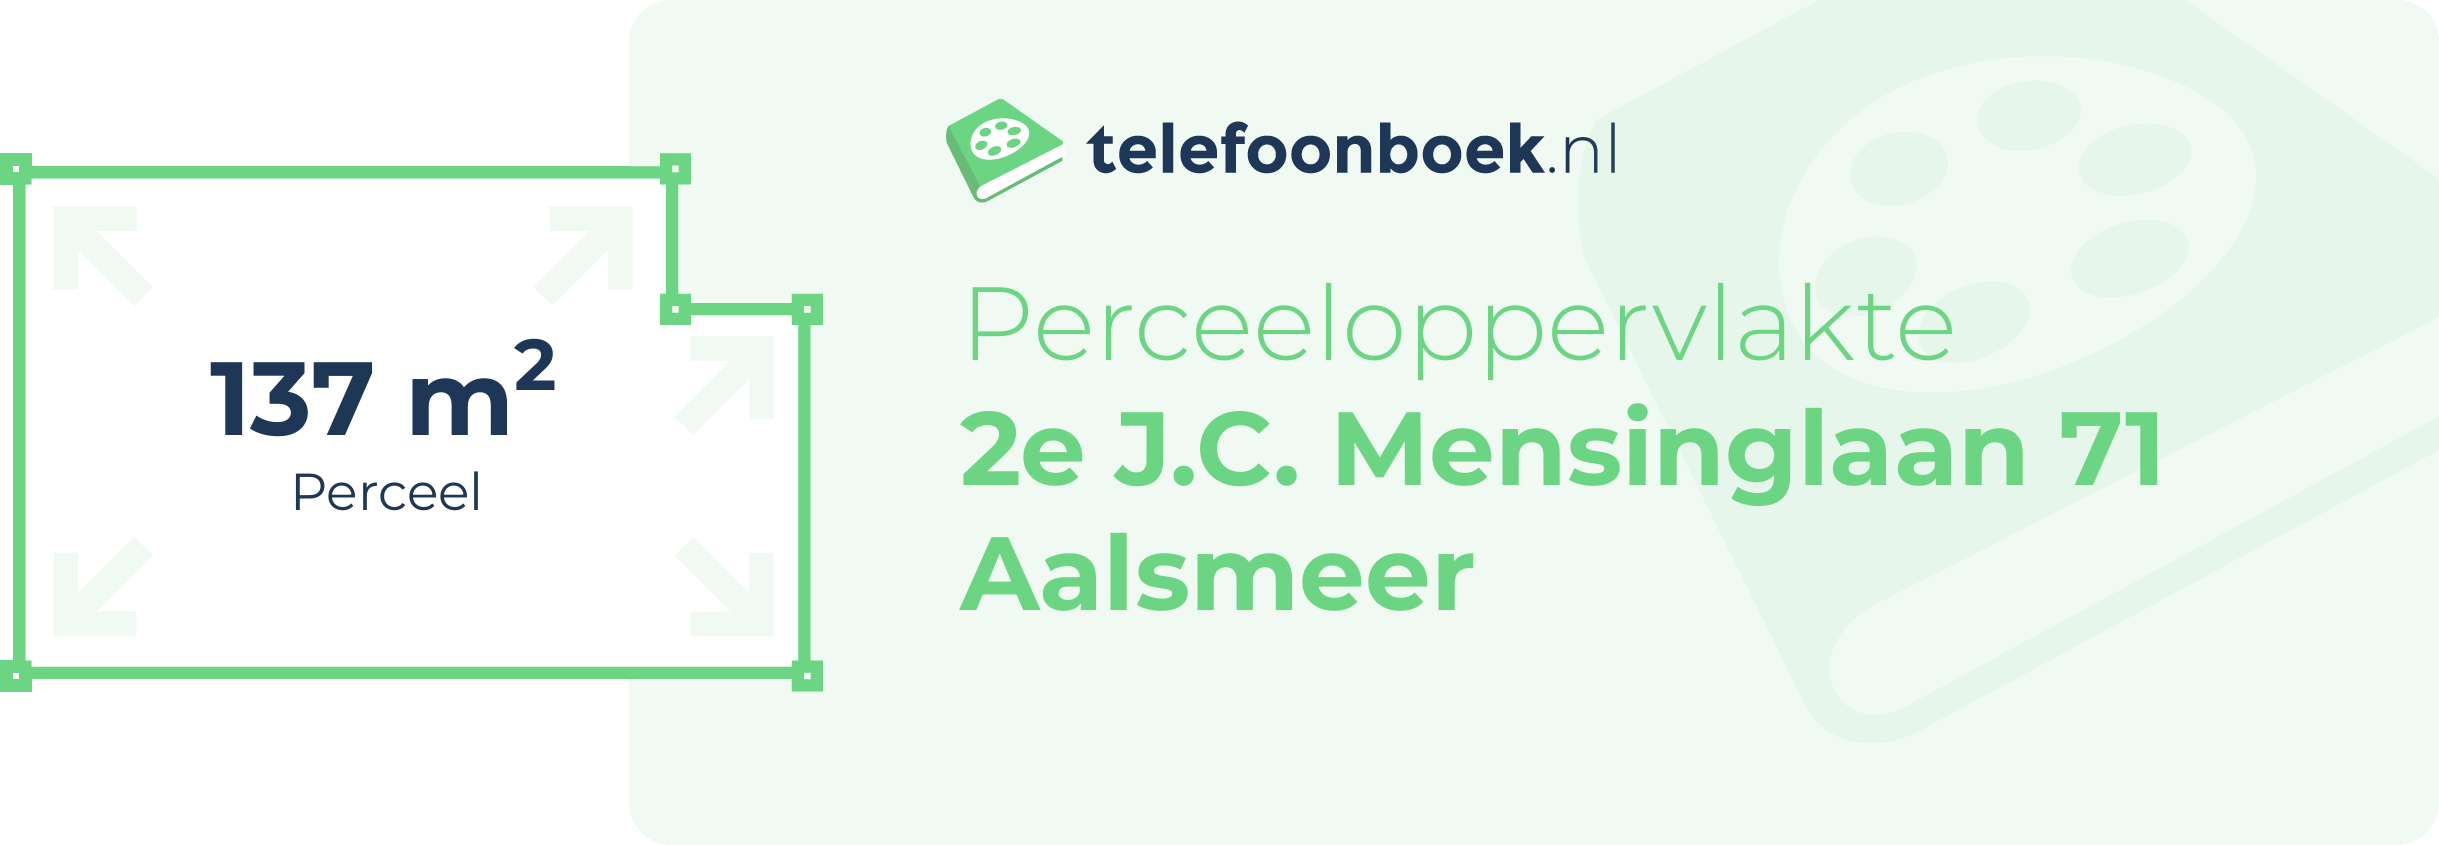 Perceeloppervlakte 2e J.C. Mensinglaan 71 Aalsmeer